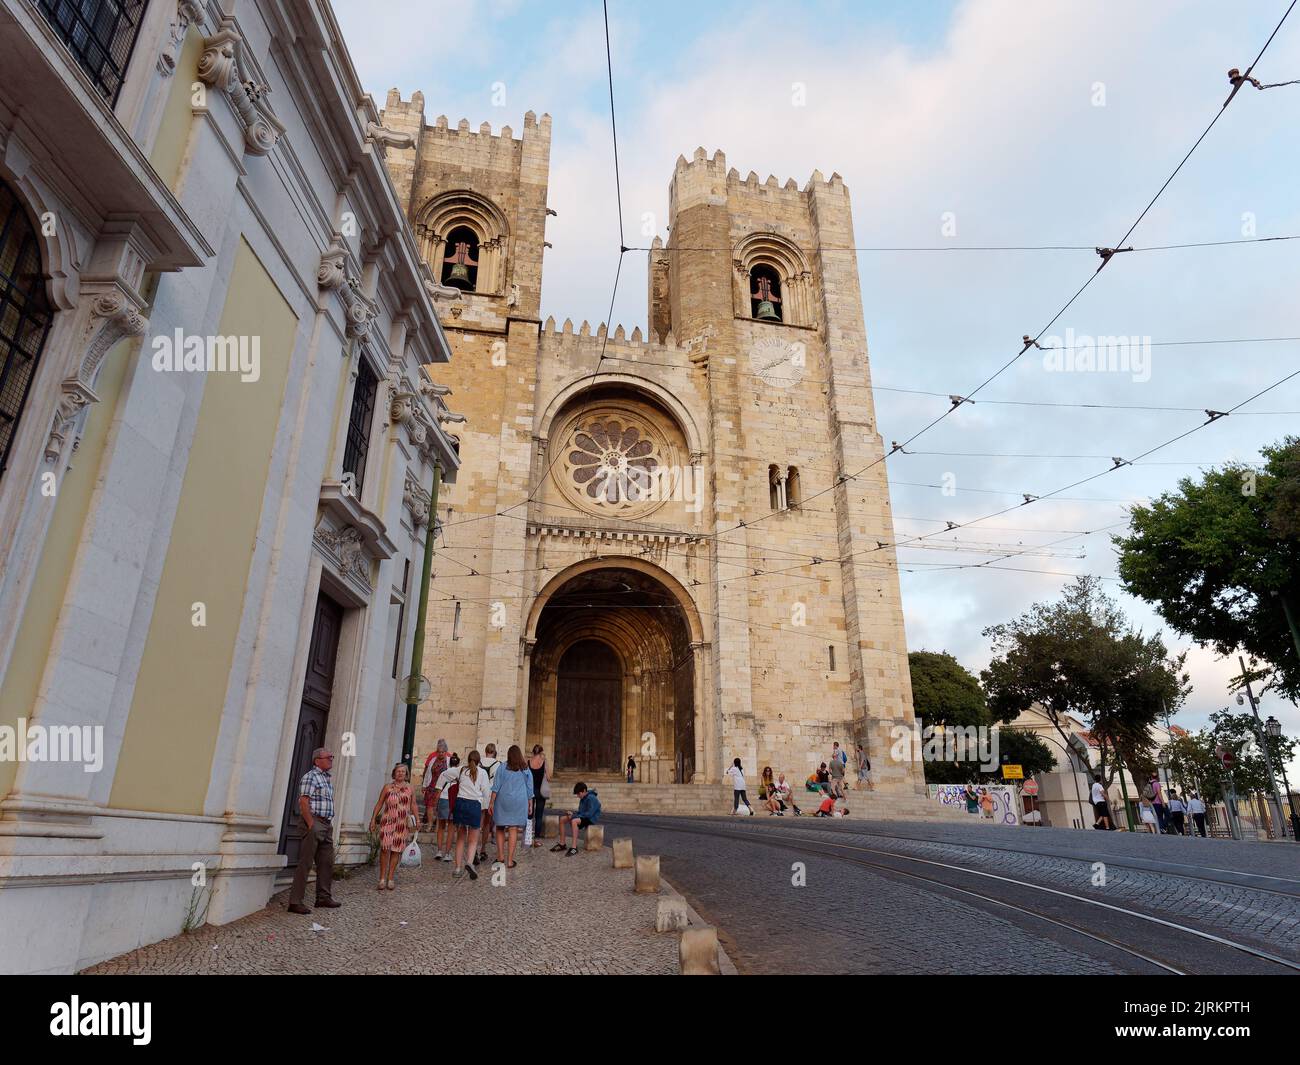 Cathédrale Saint Mary Major alias Cathédrale de Lisbonne alias Sé de Lisboa. Les touristes marchent dans la rue avec ses lignes de tramway. Banque D'Images